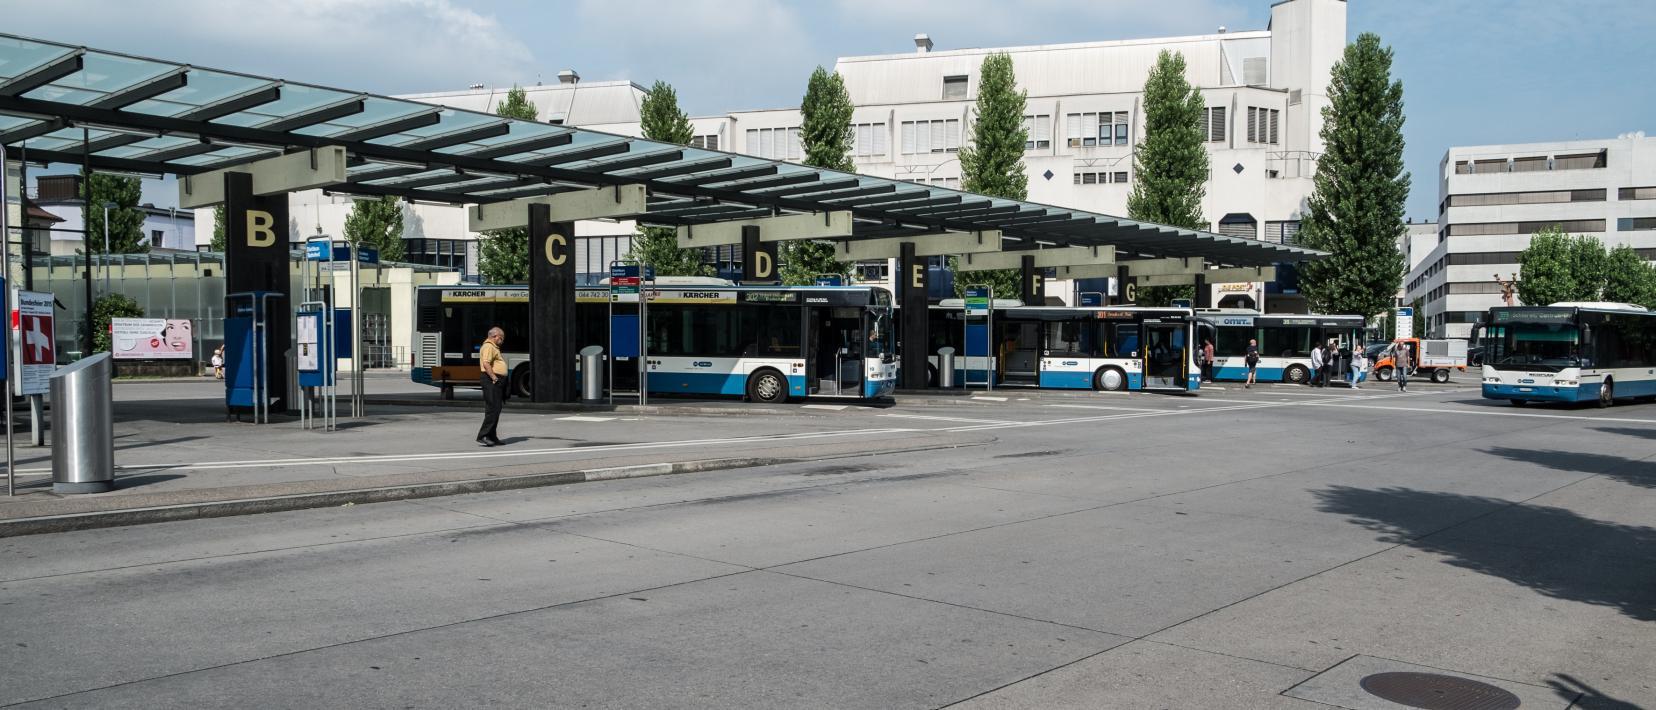 Das Bild zeigt den Bahnhofplatz in Dietikon.